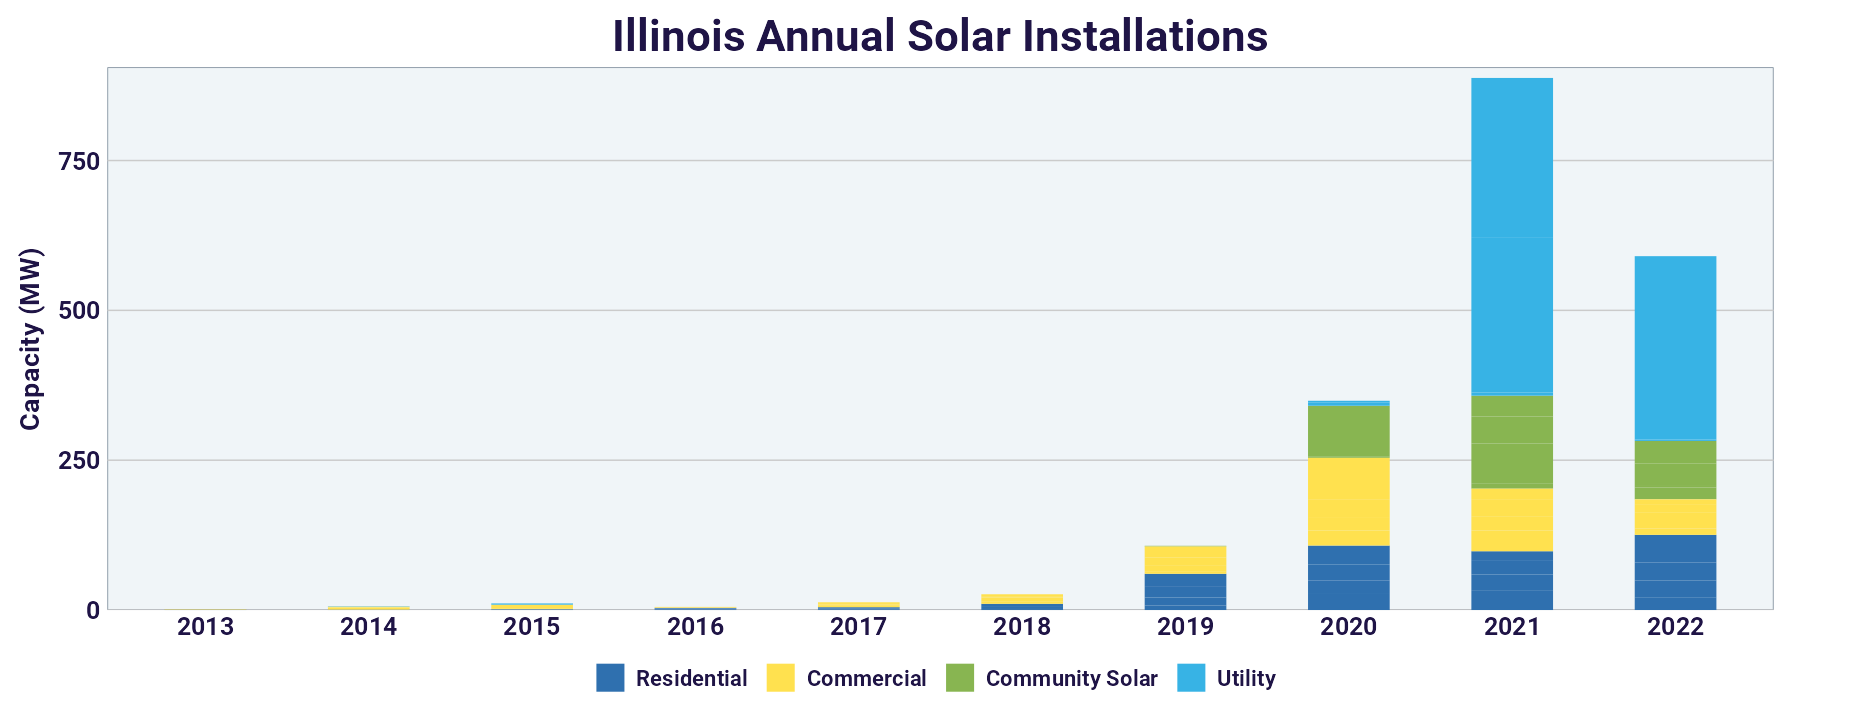 Illinois Annual Solar Installations